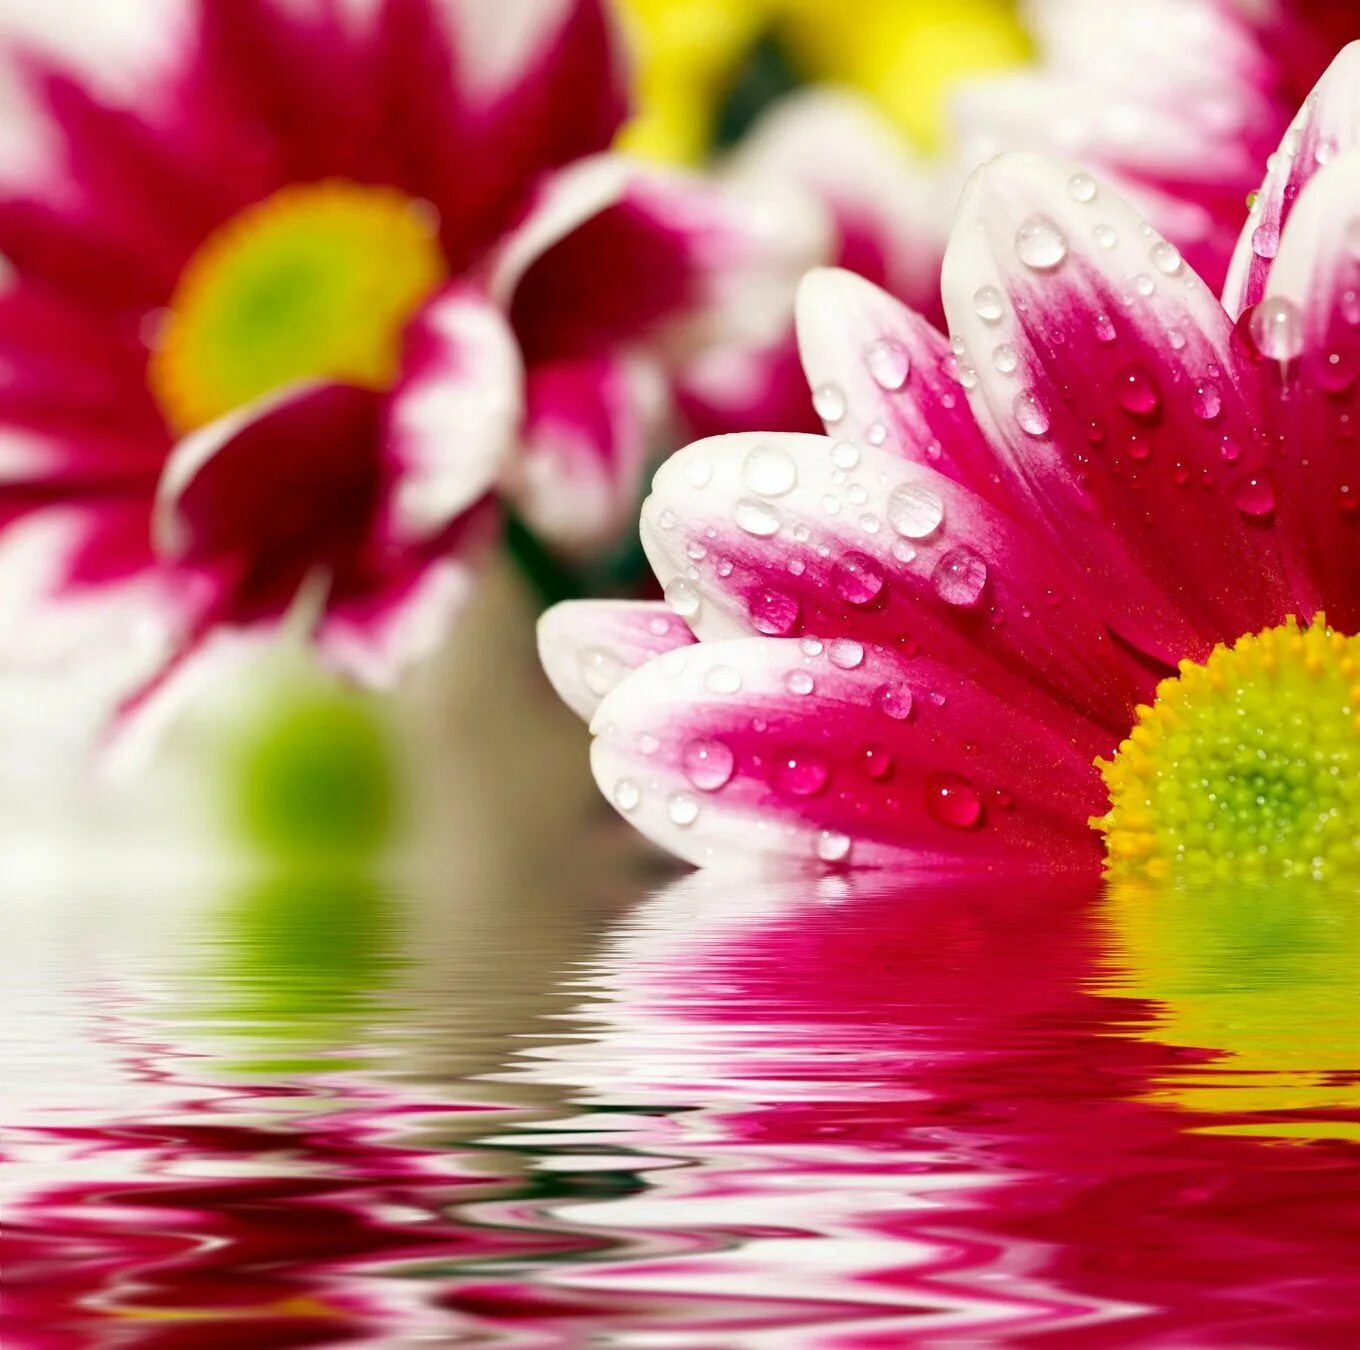 Картинки хорошего доброго настроения. Открытки хорошего дня. Пожелания удачного дня. Красивые пожелания хорошего дня. Яркие цветы в воде.